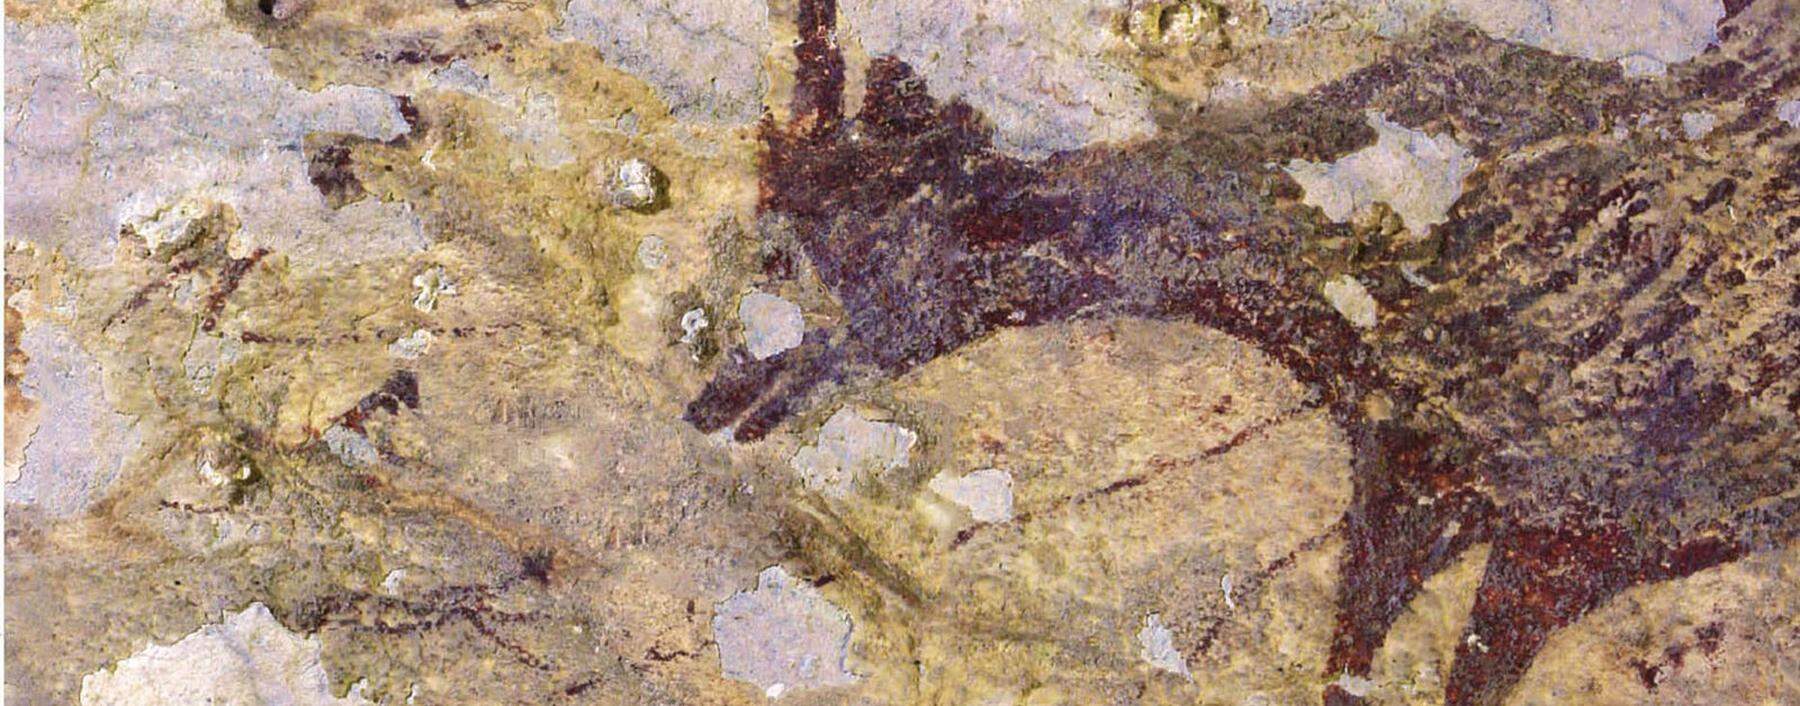 Standen diese Bilder am Beginn menschlichen Kunstschaffens? Der Fund in einer Höhle auf der indonesischen Insel Sulawesi bricht mit vielen unserer scheinbaren Gewissheiten.